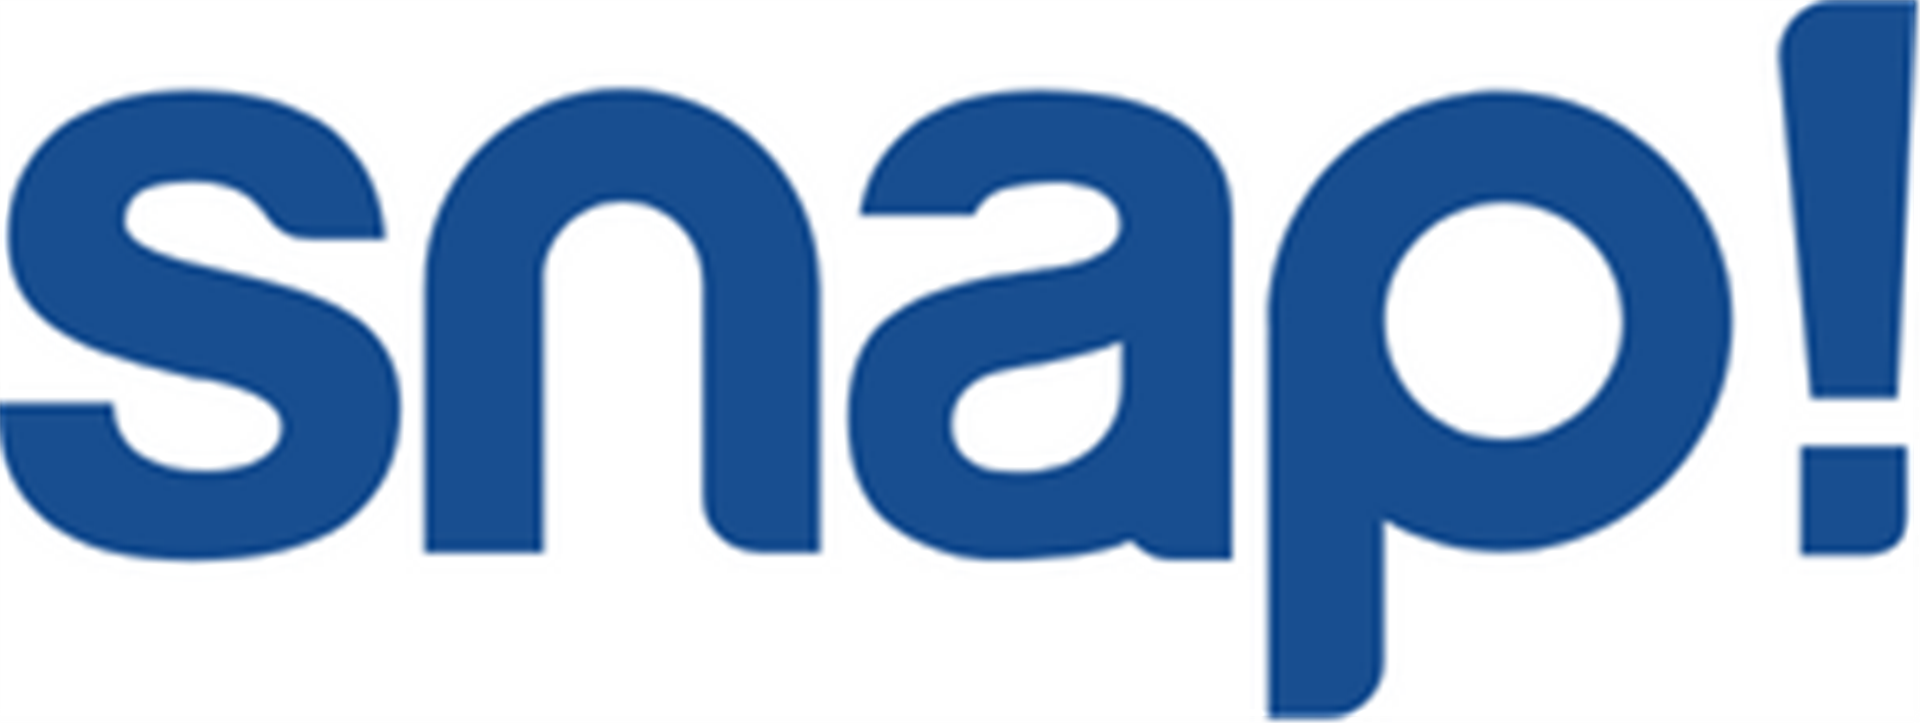 Snap company logo